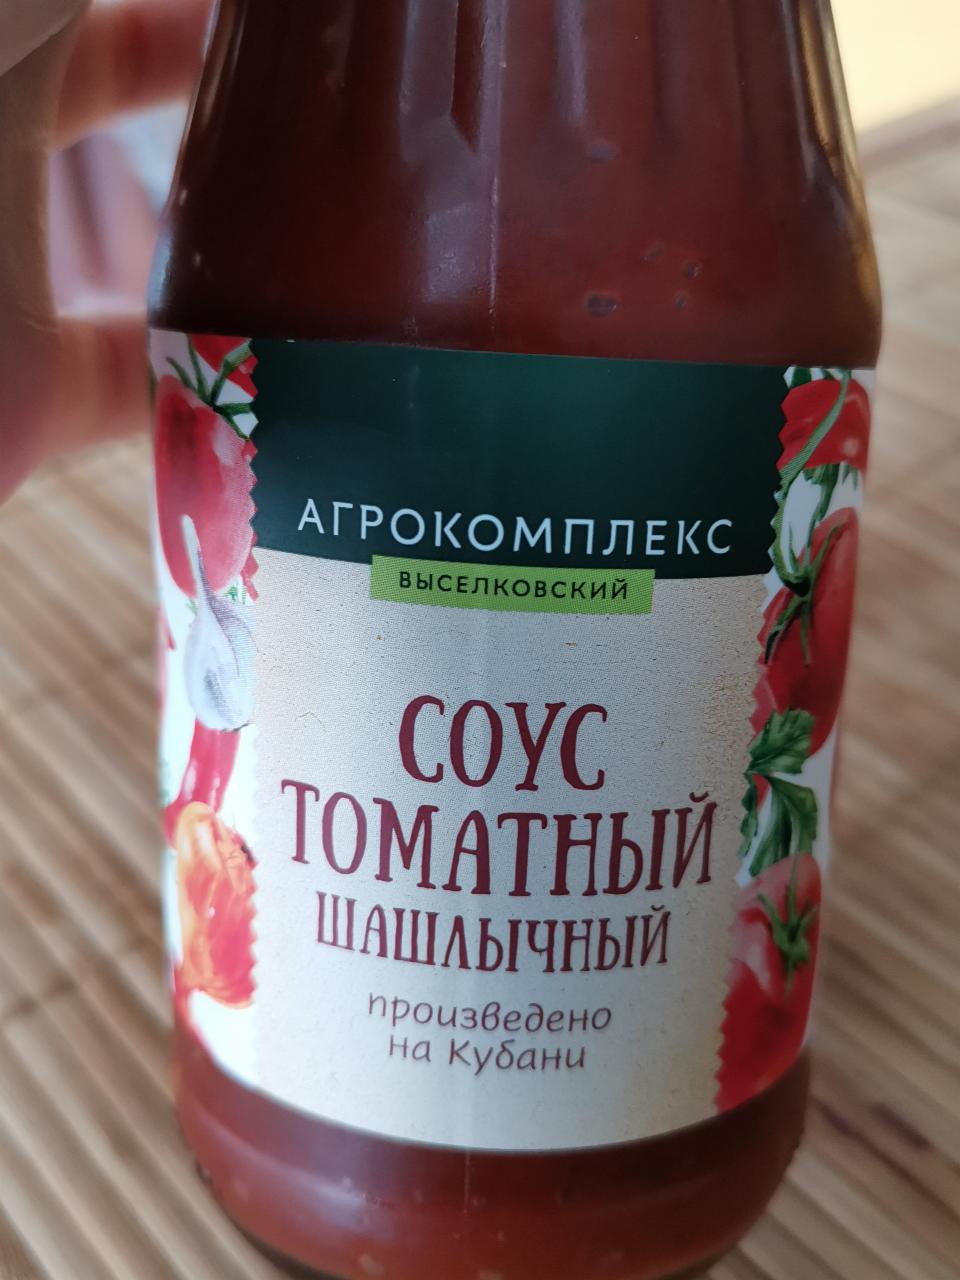 Фото - Соус томатный шашлычный Агрокомплекс выселковский